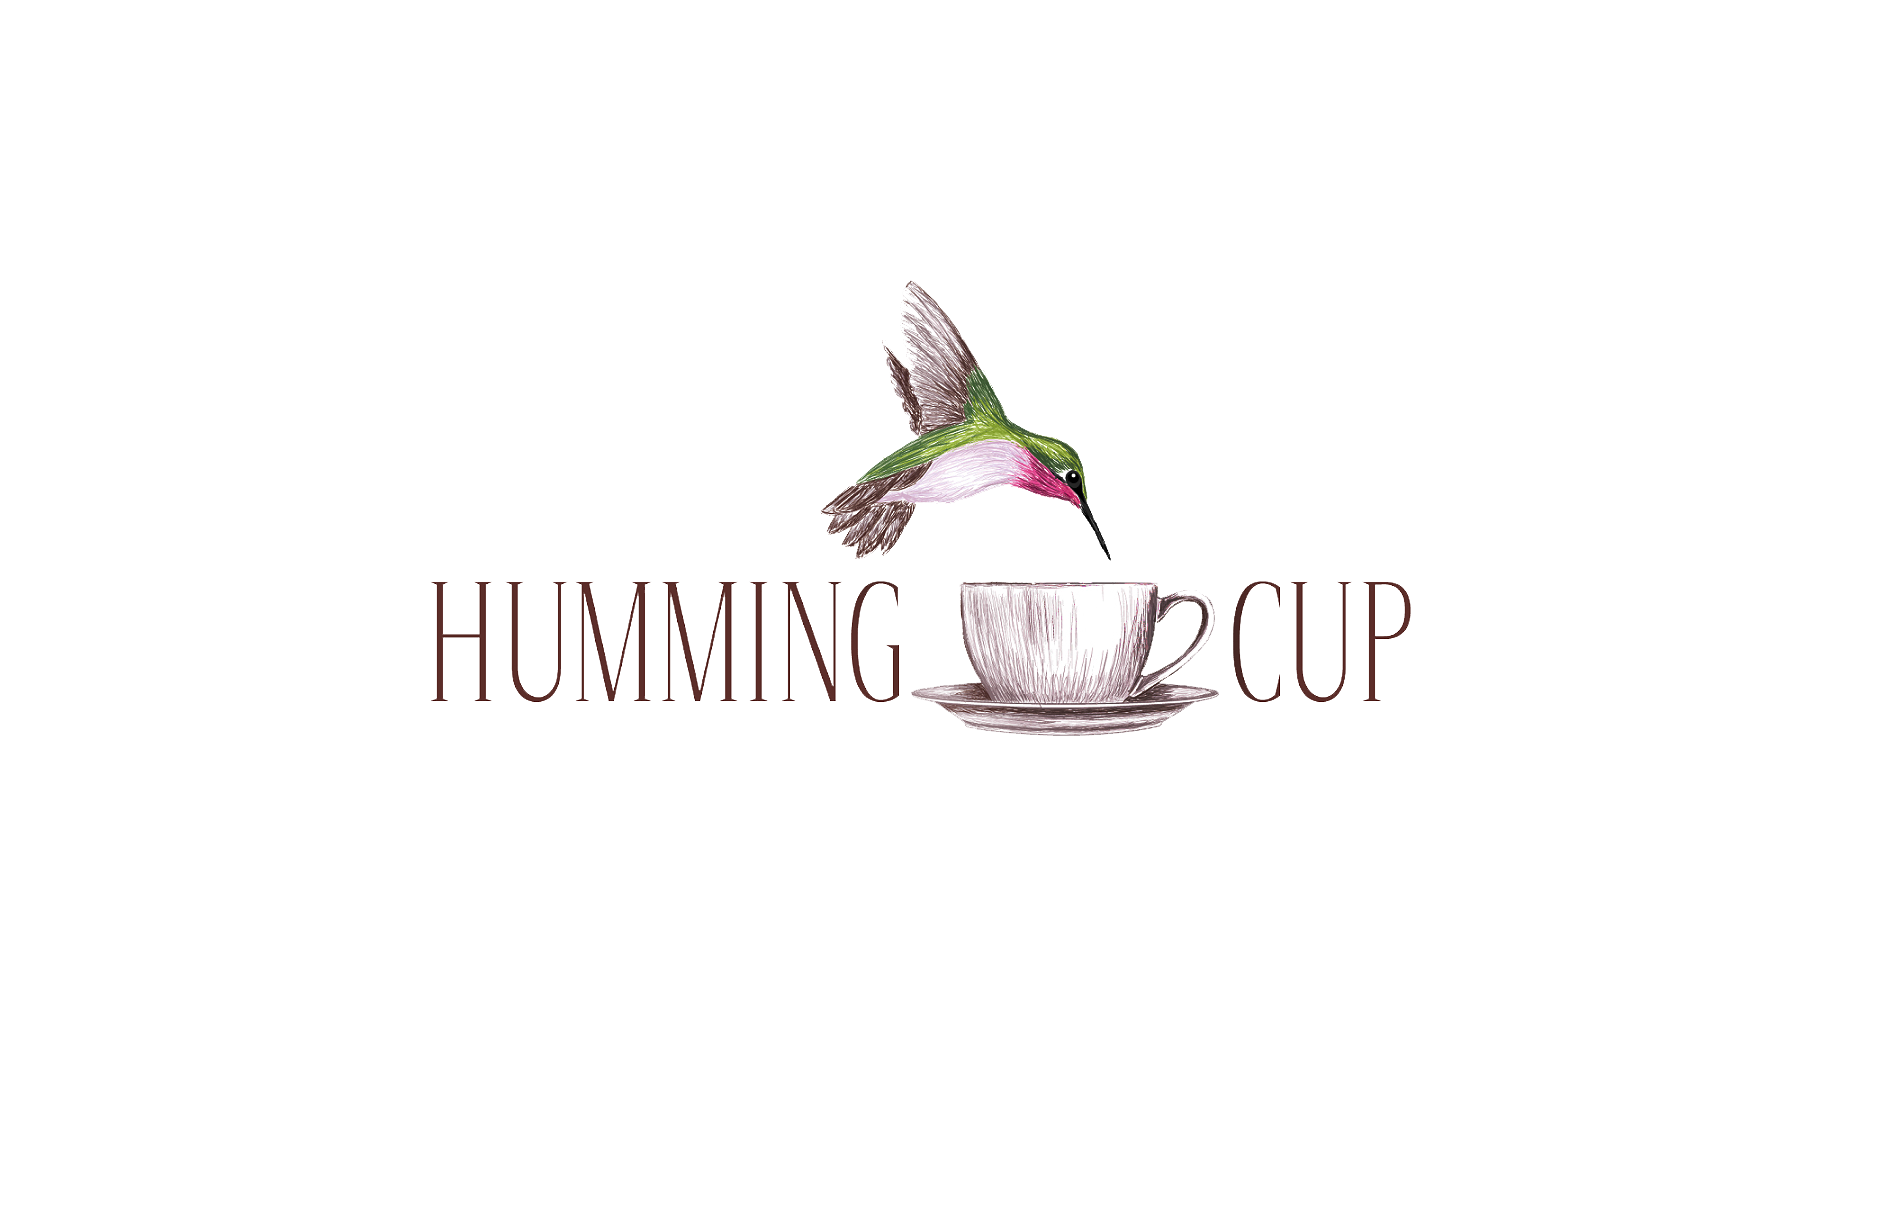 Humming Cup Tea